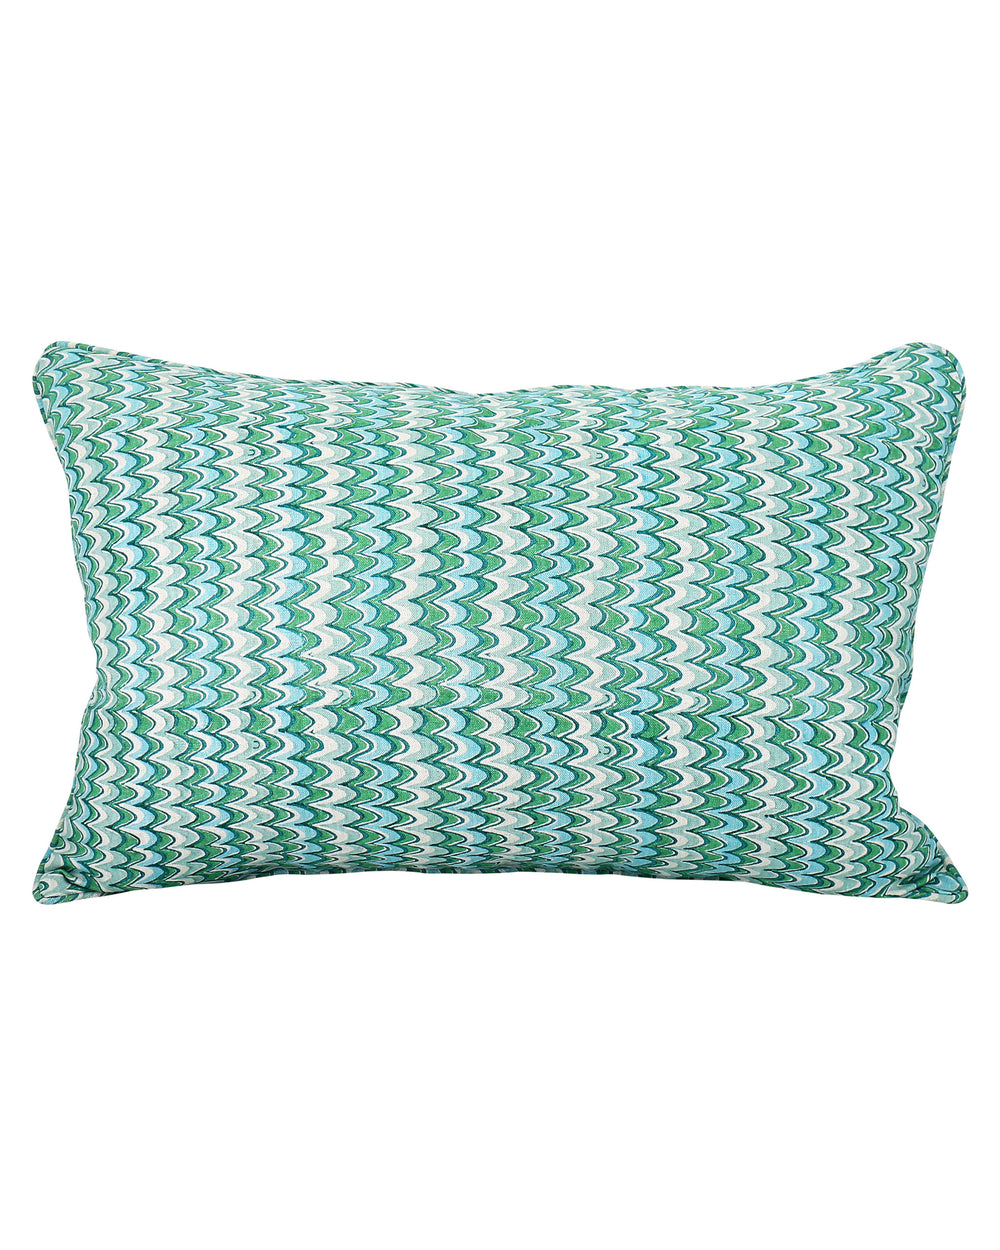 Firenze Emerald Cushion